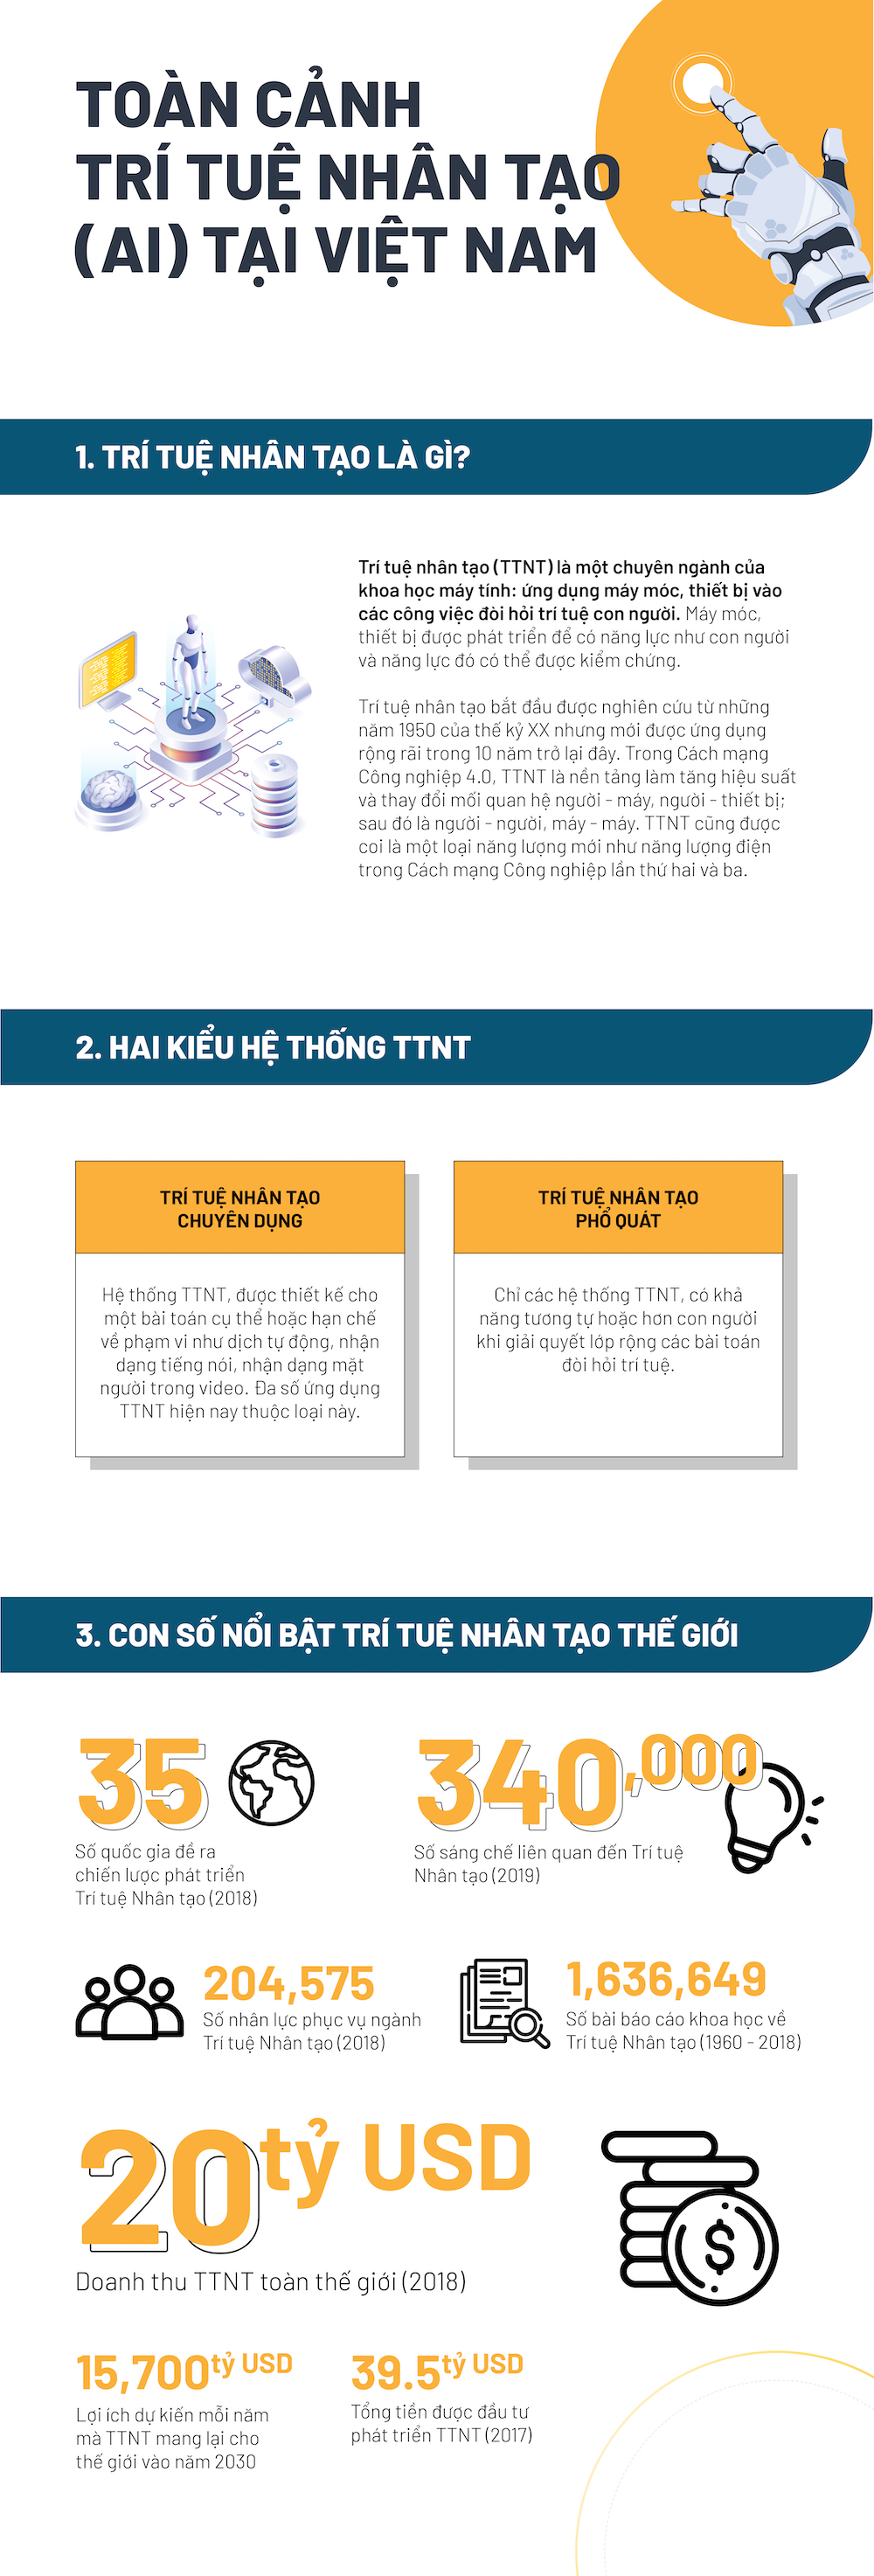 [Infographic] Toàn cảnh sự phát triển của trí tuệ nhân tạo tại Việt Nam - 1